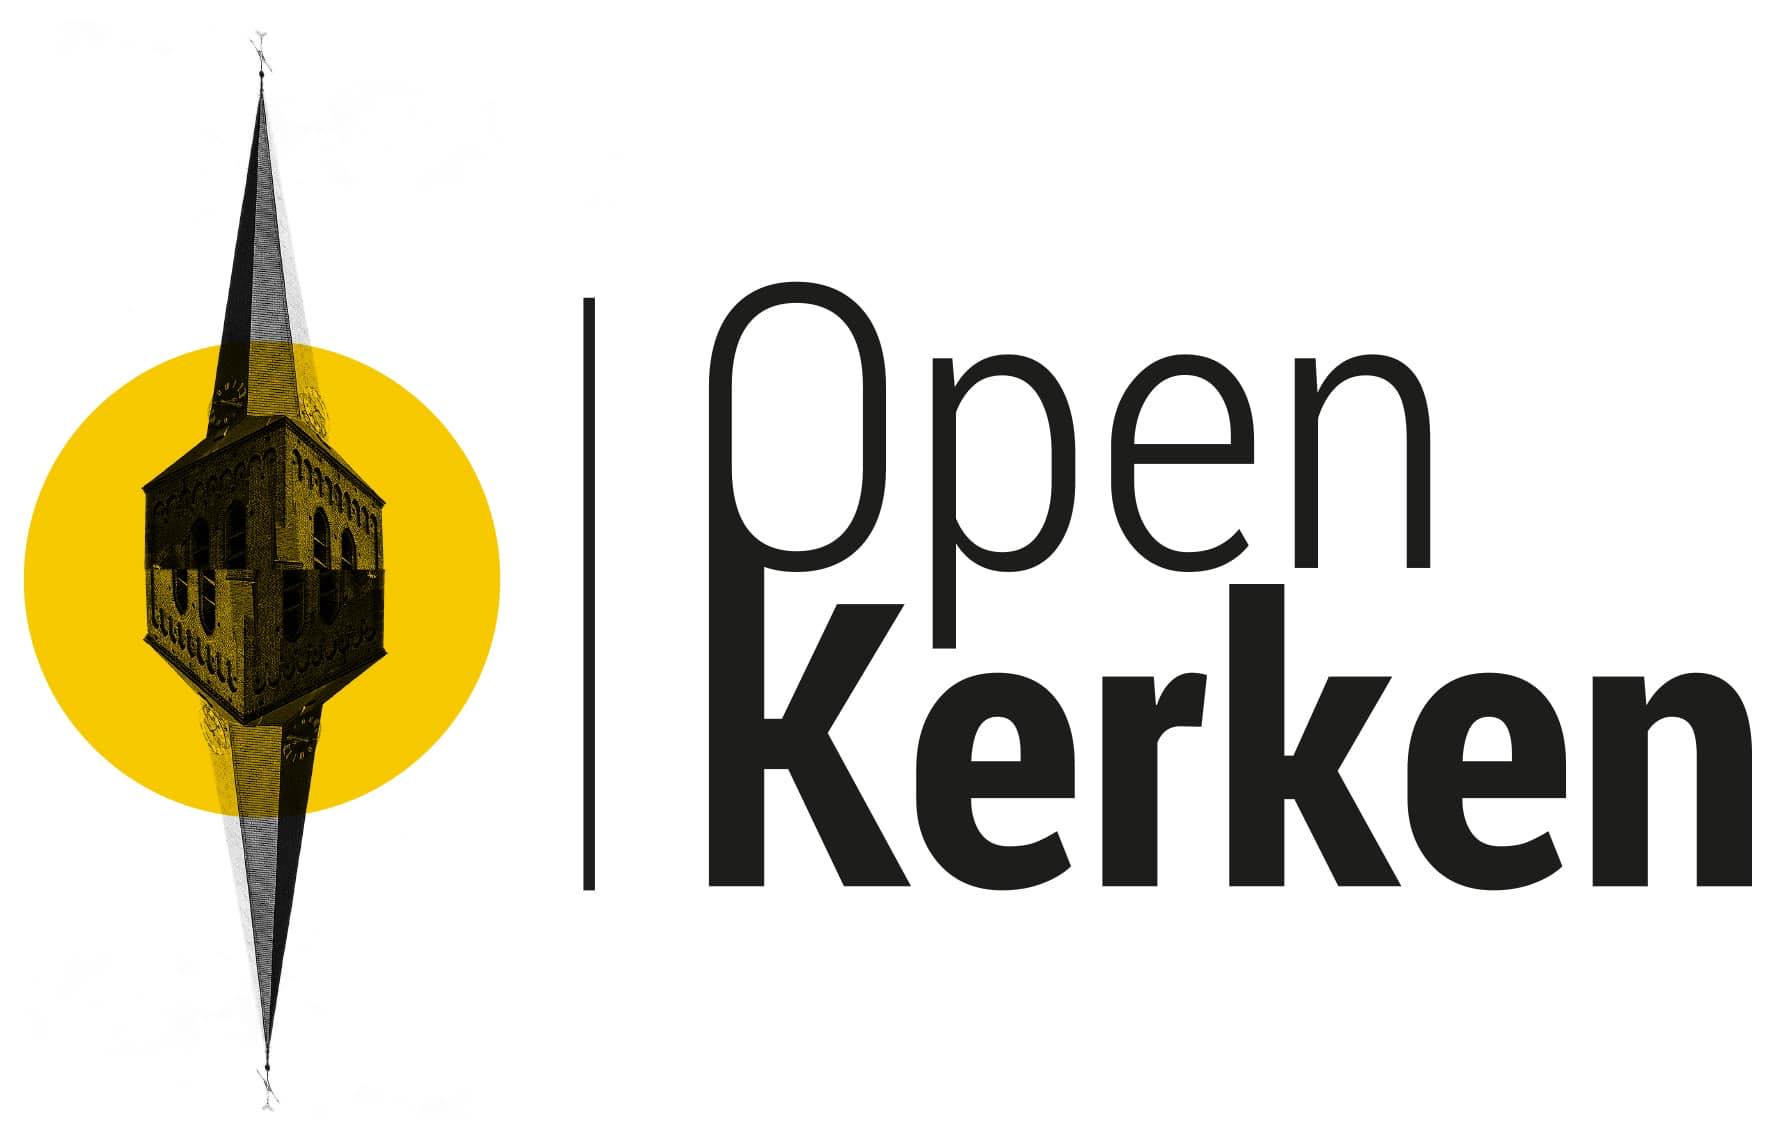 Open Kerkendag 2023